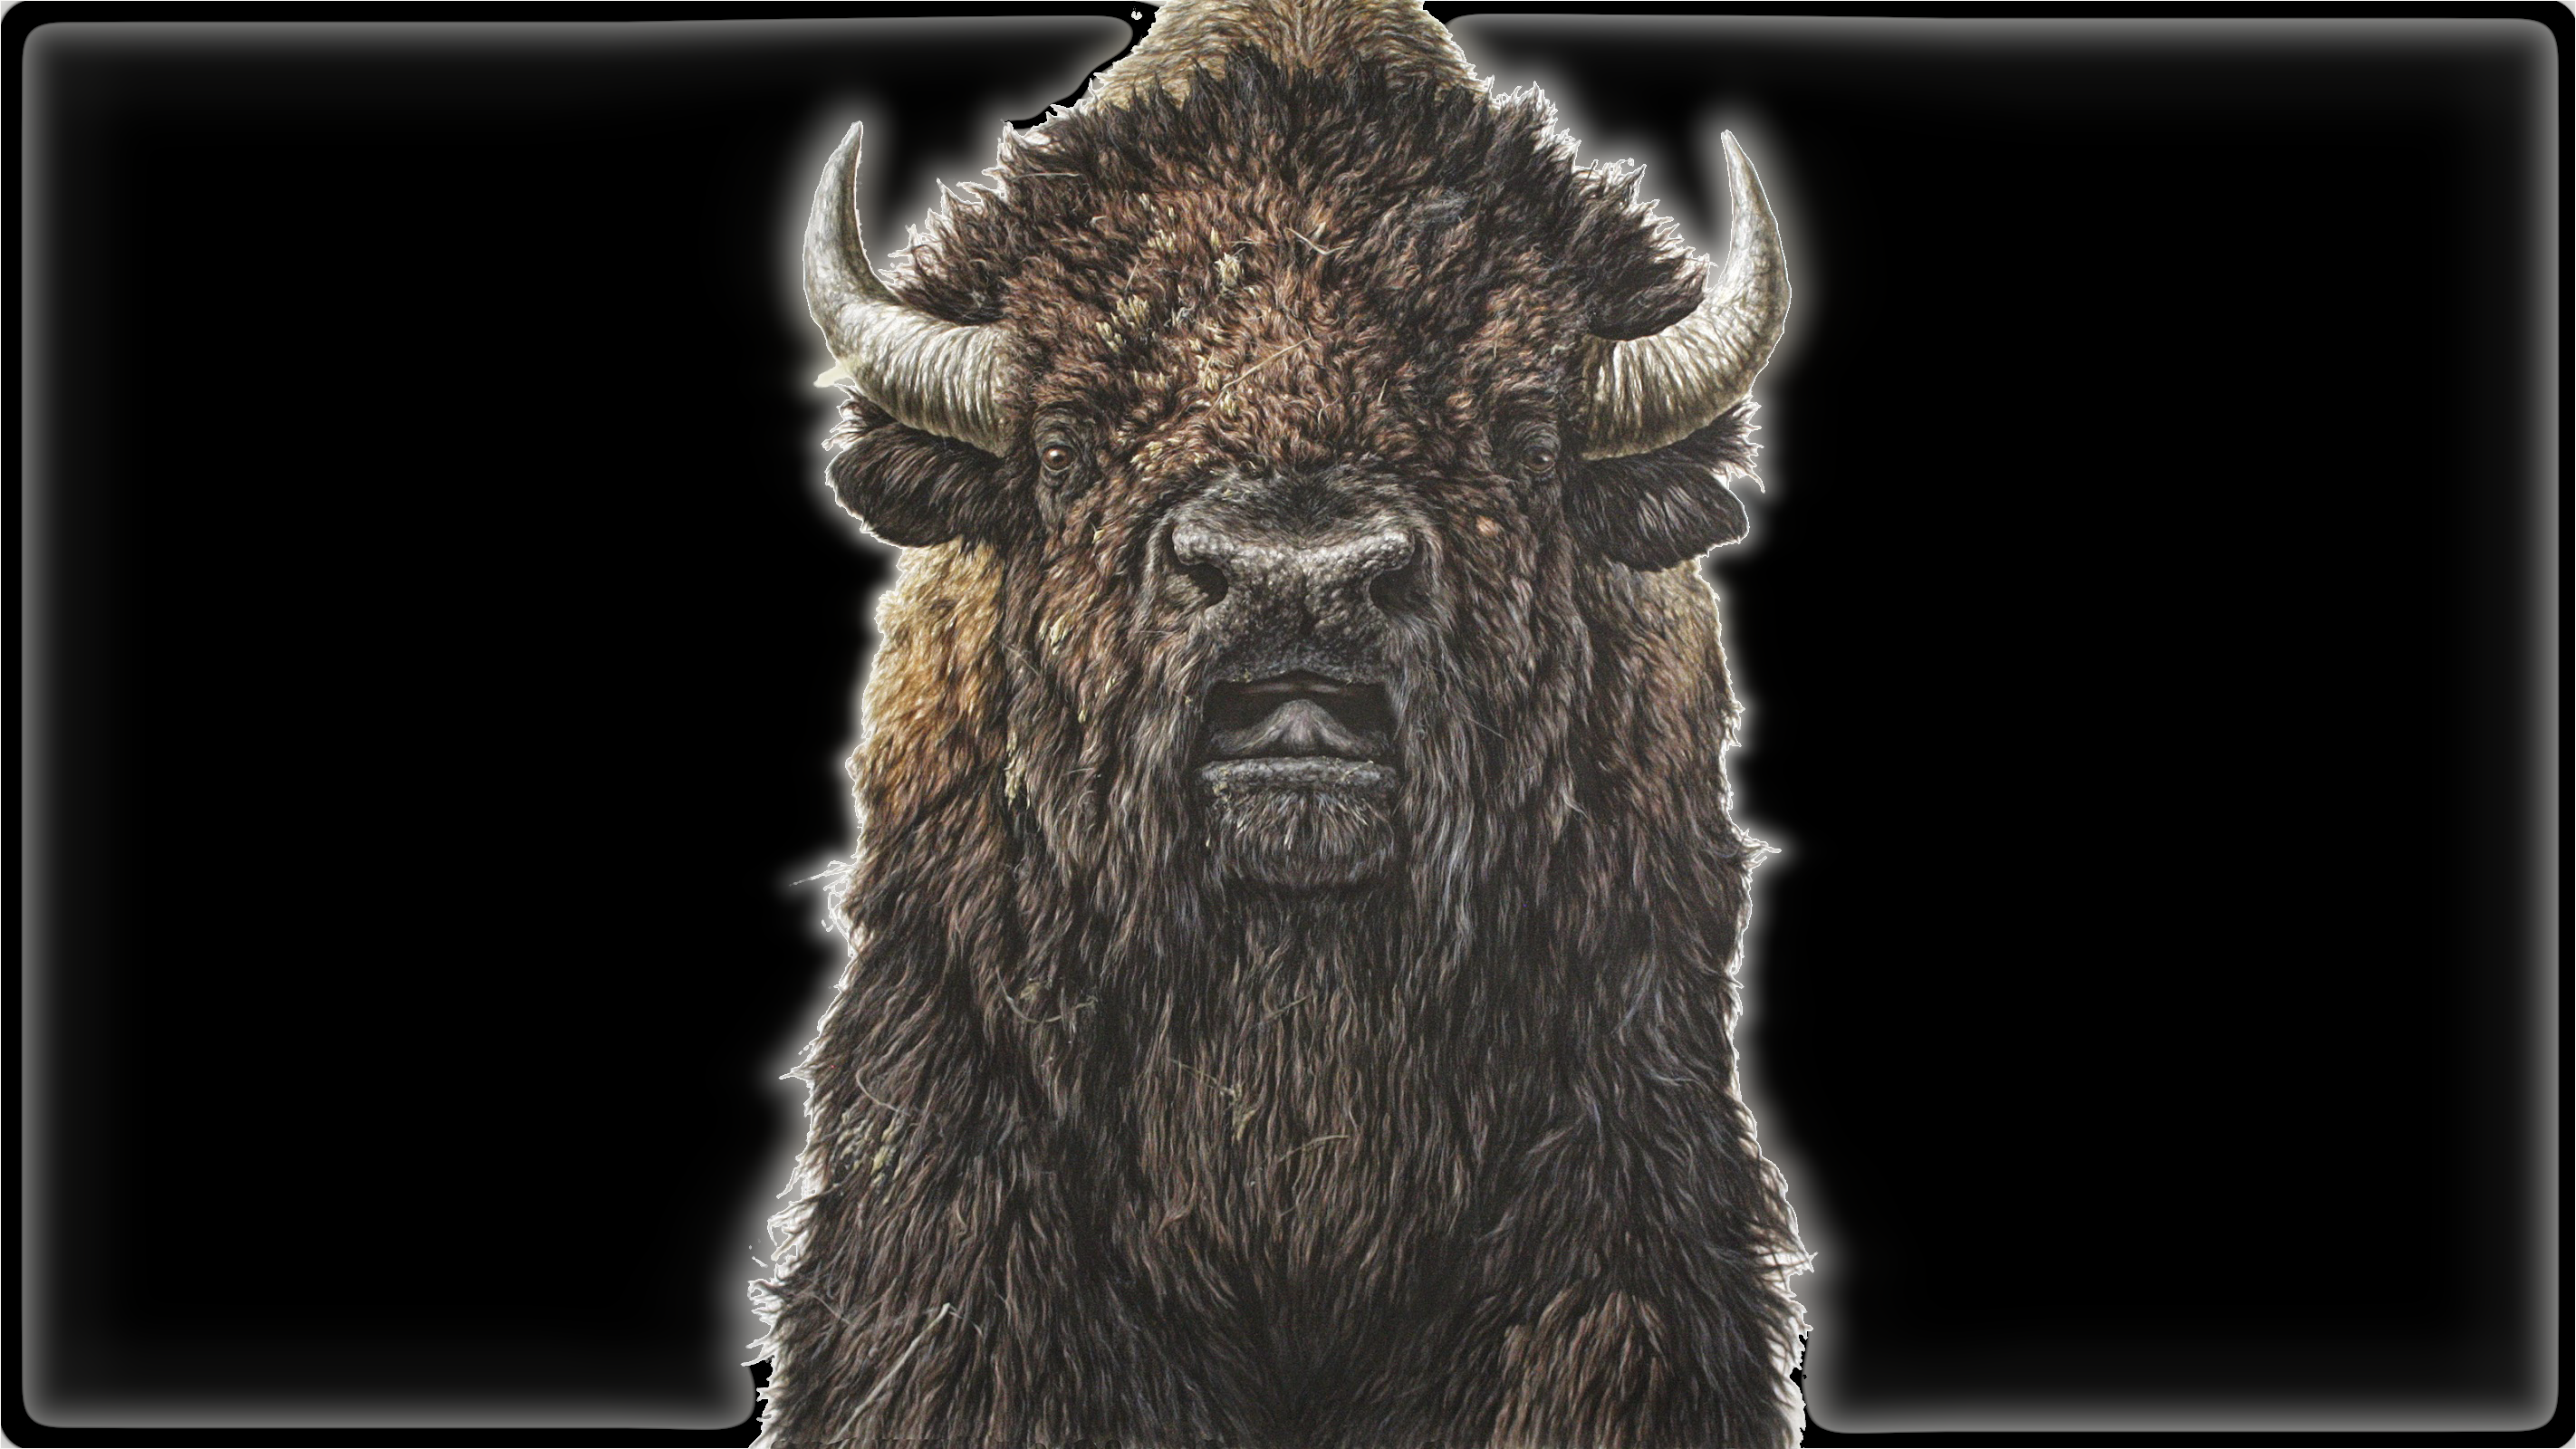 General 2844x1600 bison black background animals mammals artwork horns